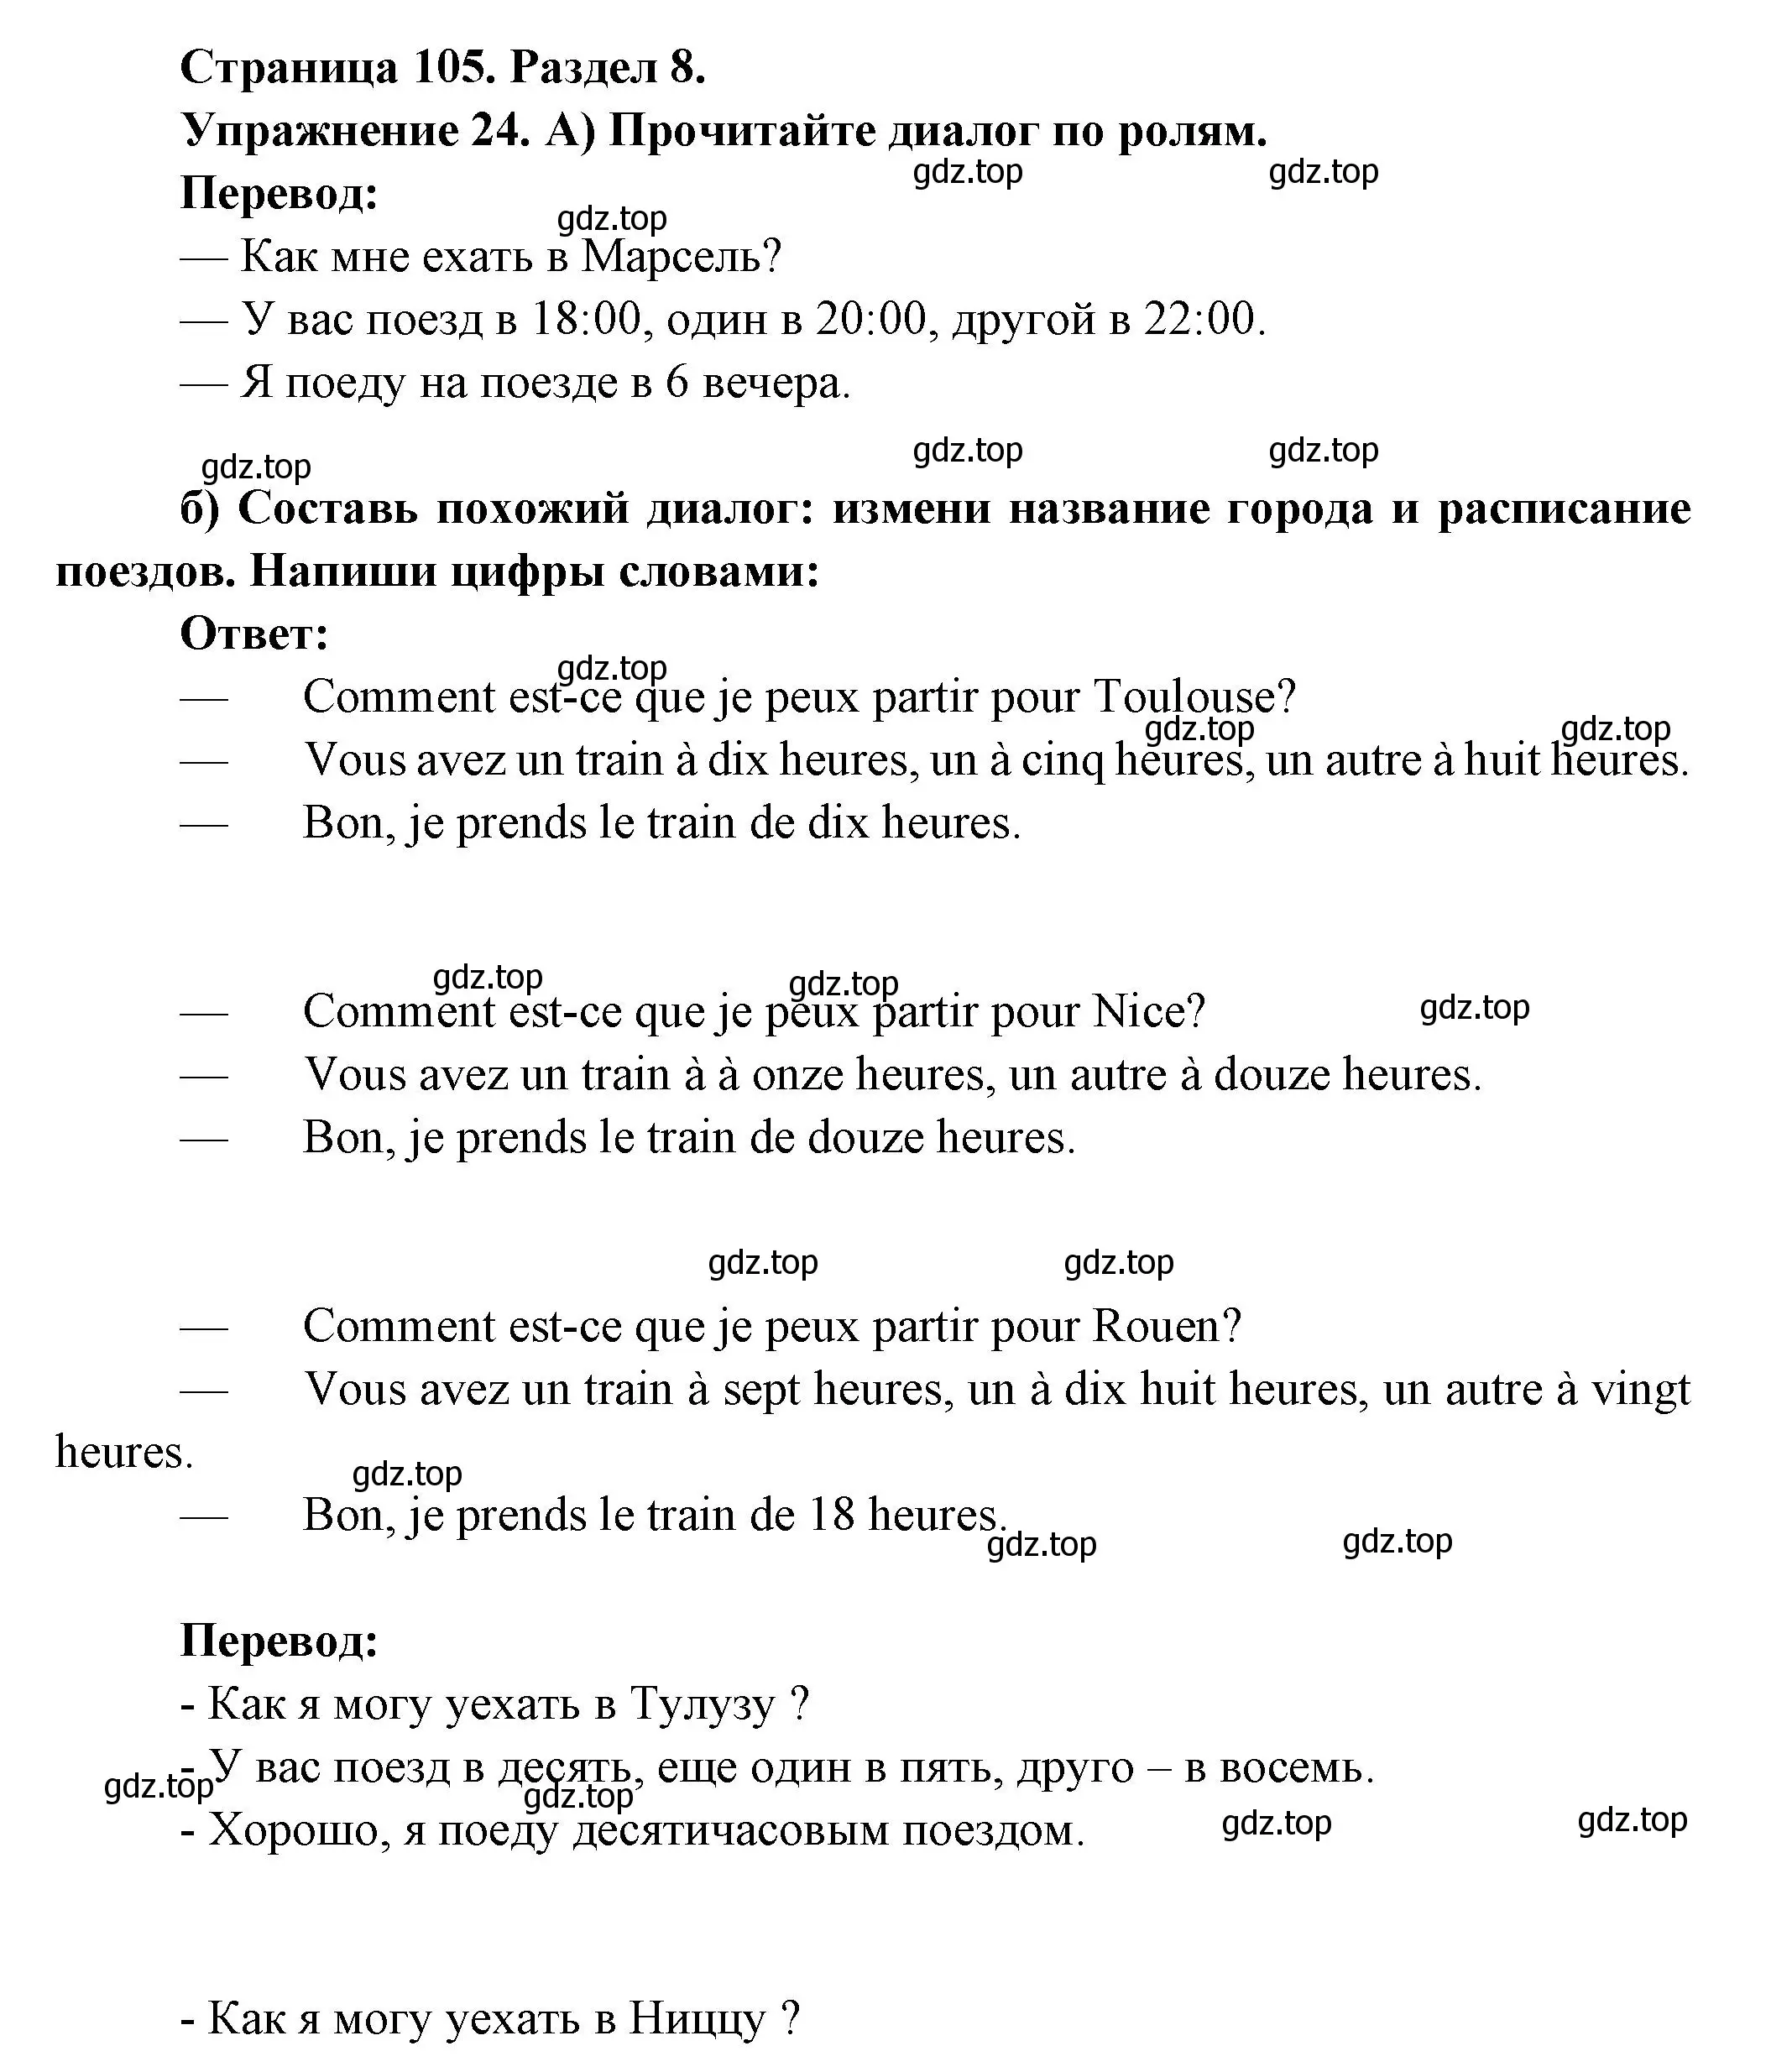 Решение номер 24 (страница 105) гдз по французскому языку 5 класс Береговская, Белосельская, учебник 2 часть